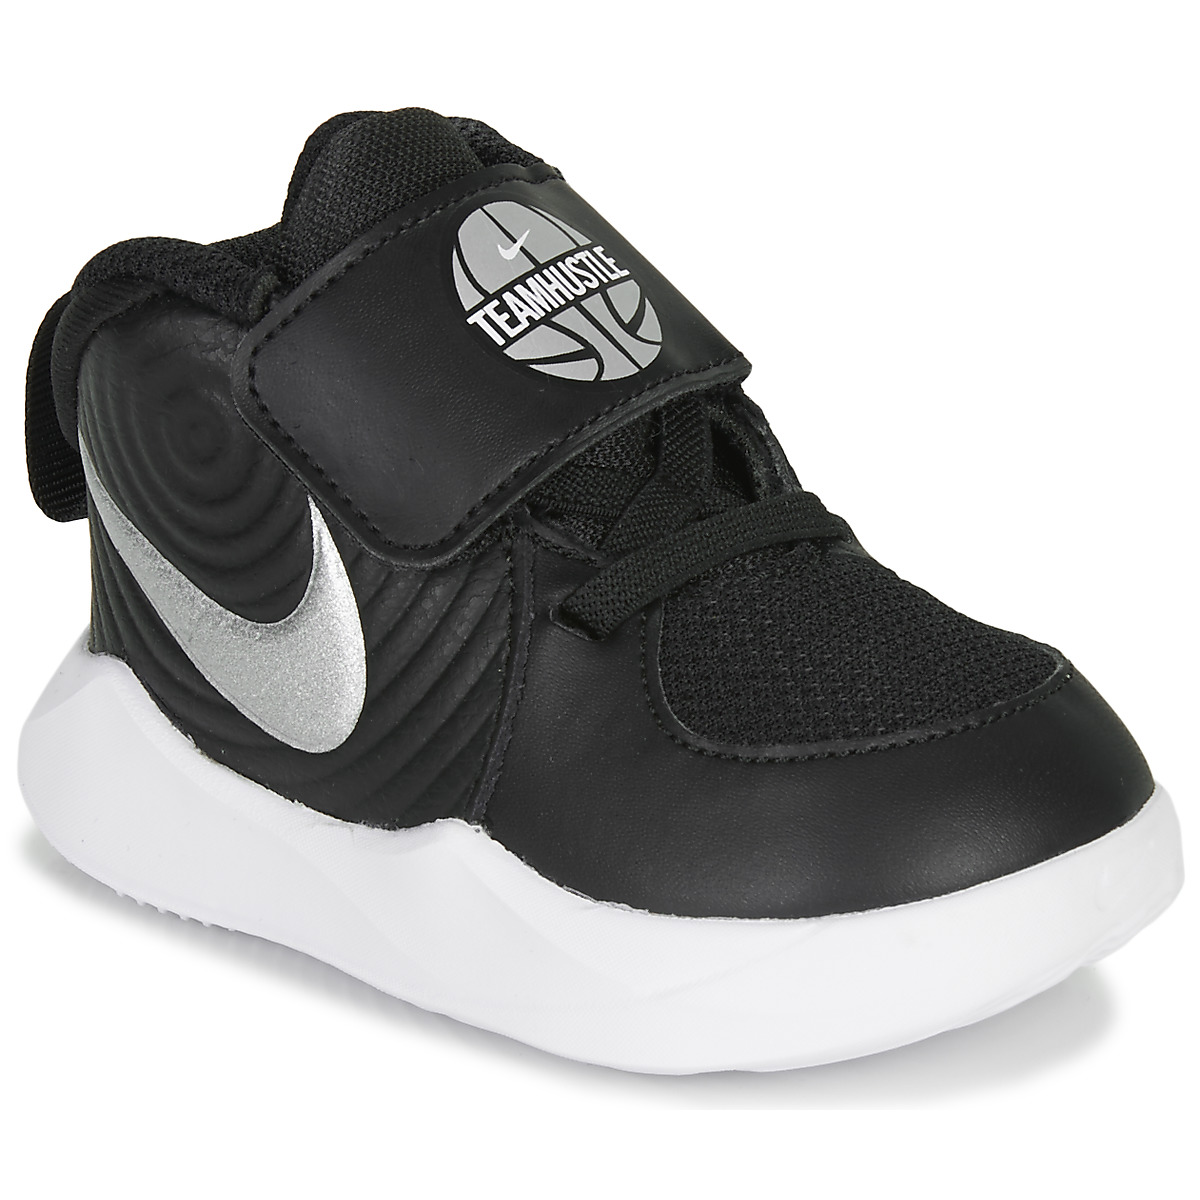 Παπούτσια του Μπάσκετ Nike TEAM HUSTLE D 9 TD